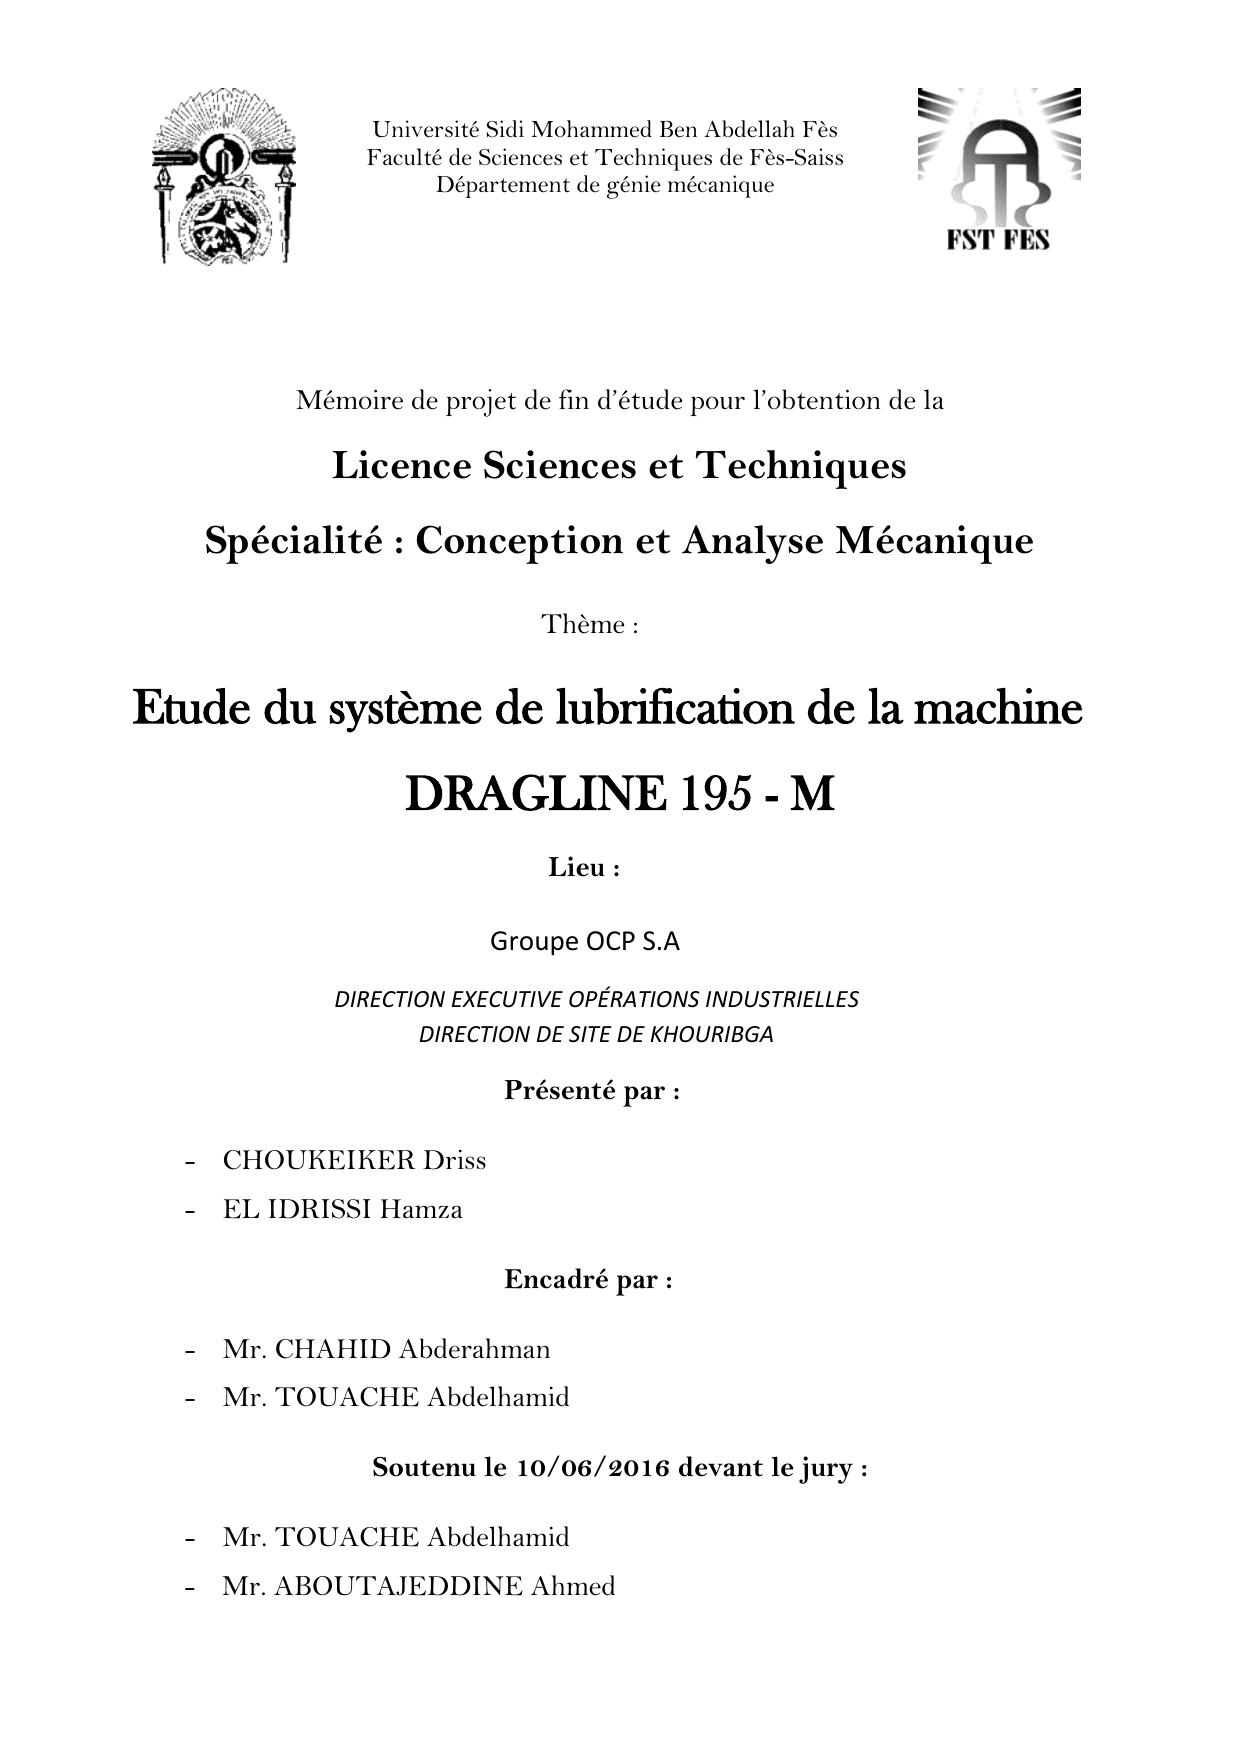 Etude du système de lubrification de la machine DRAGLINE 195 - M